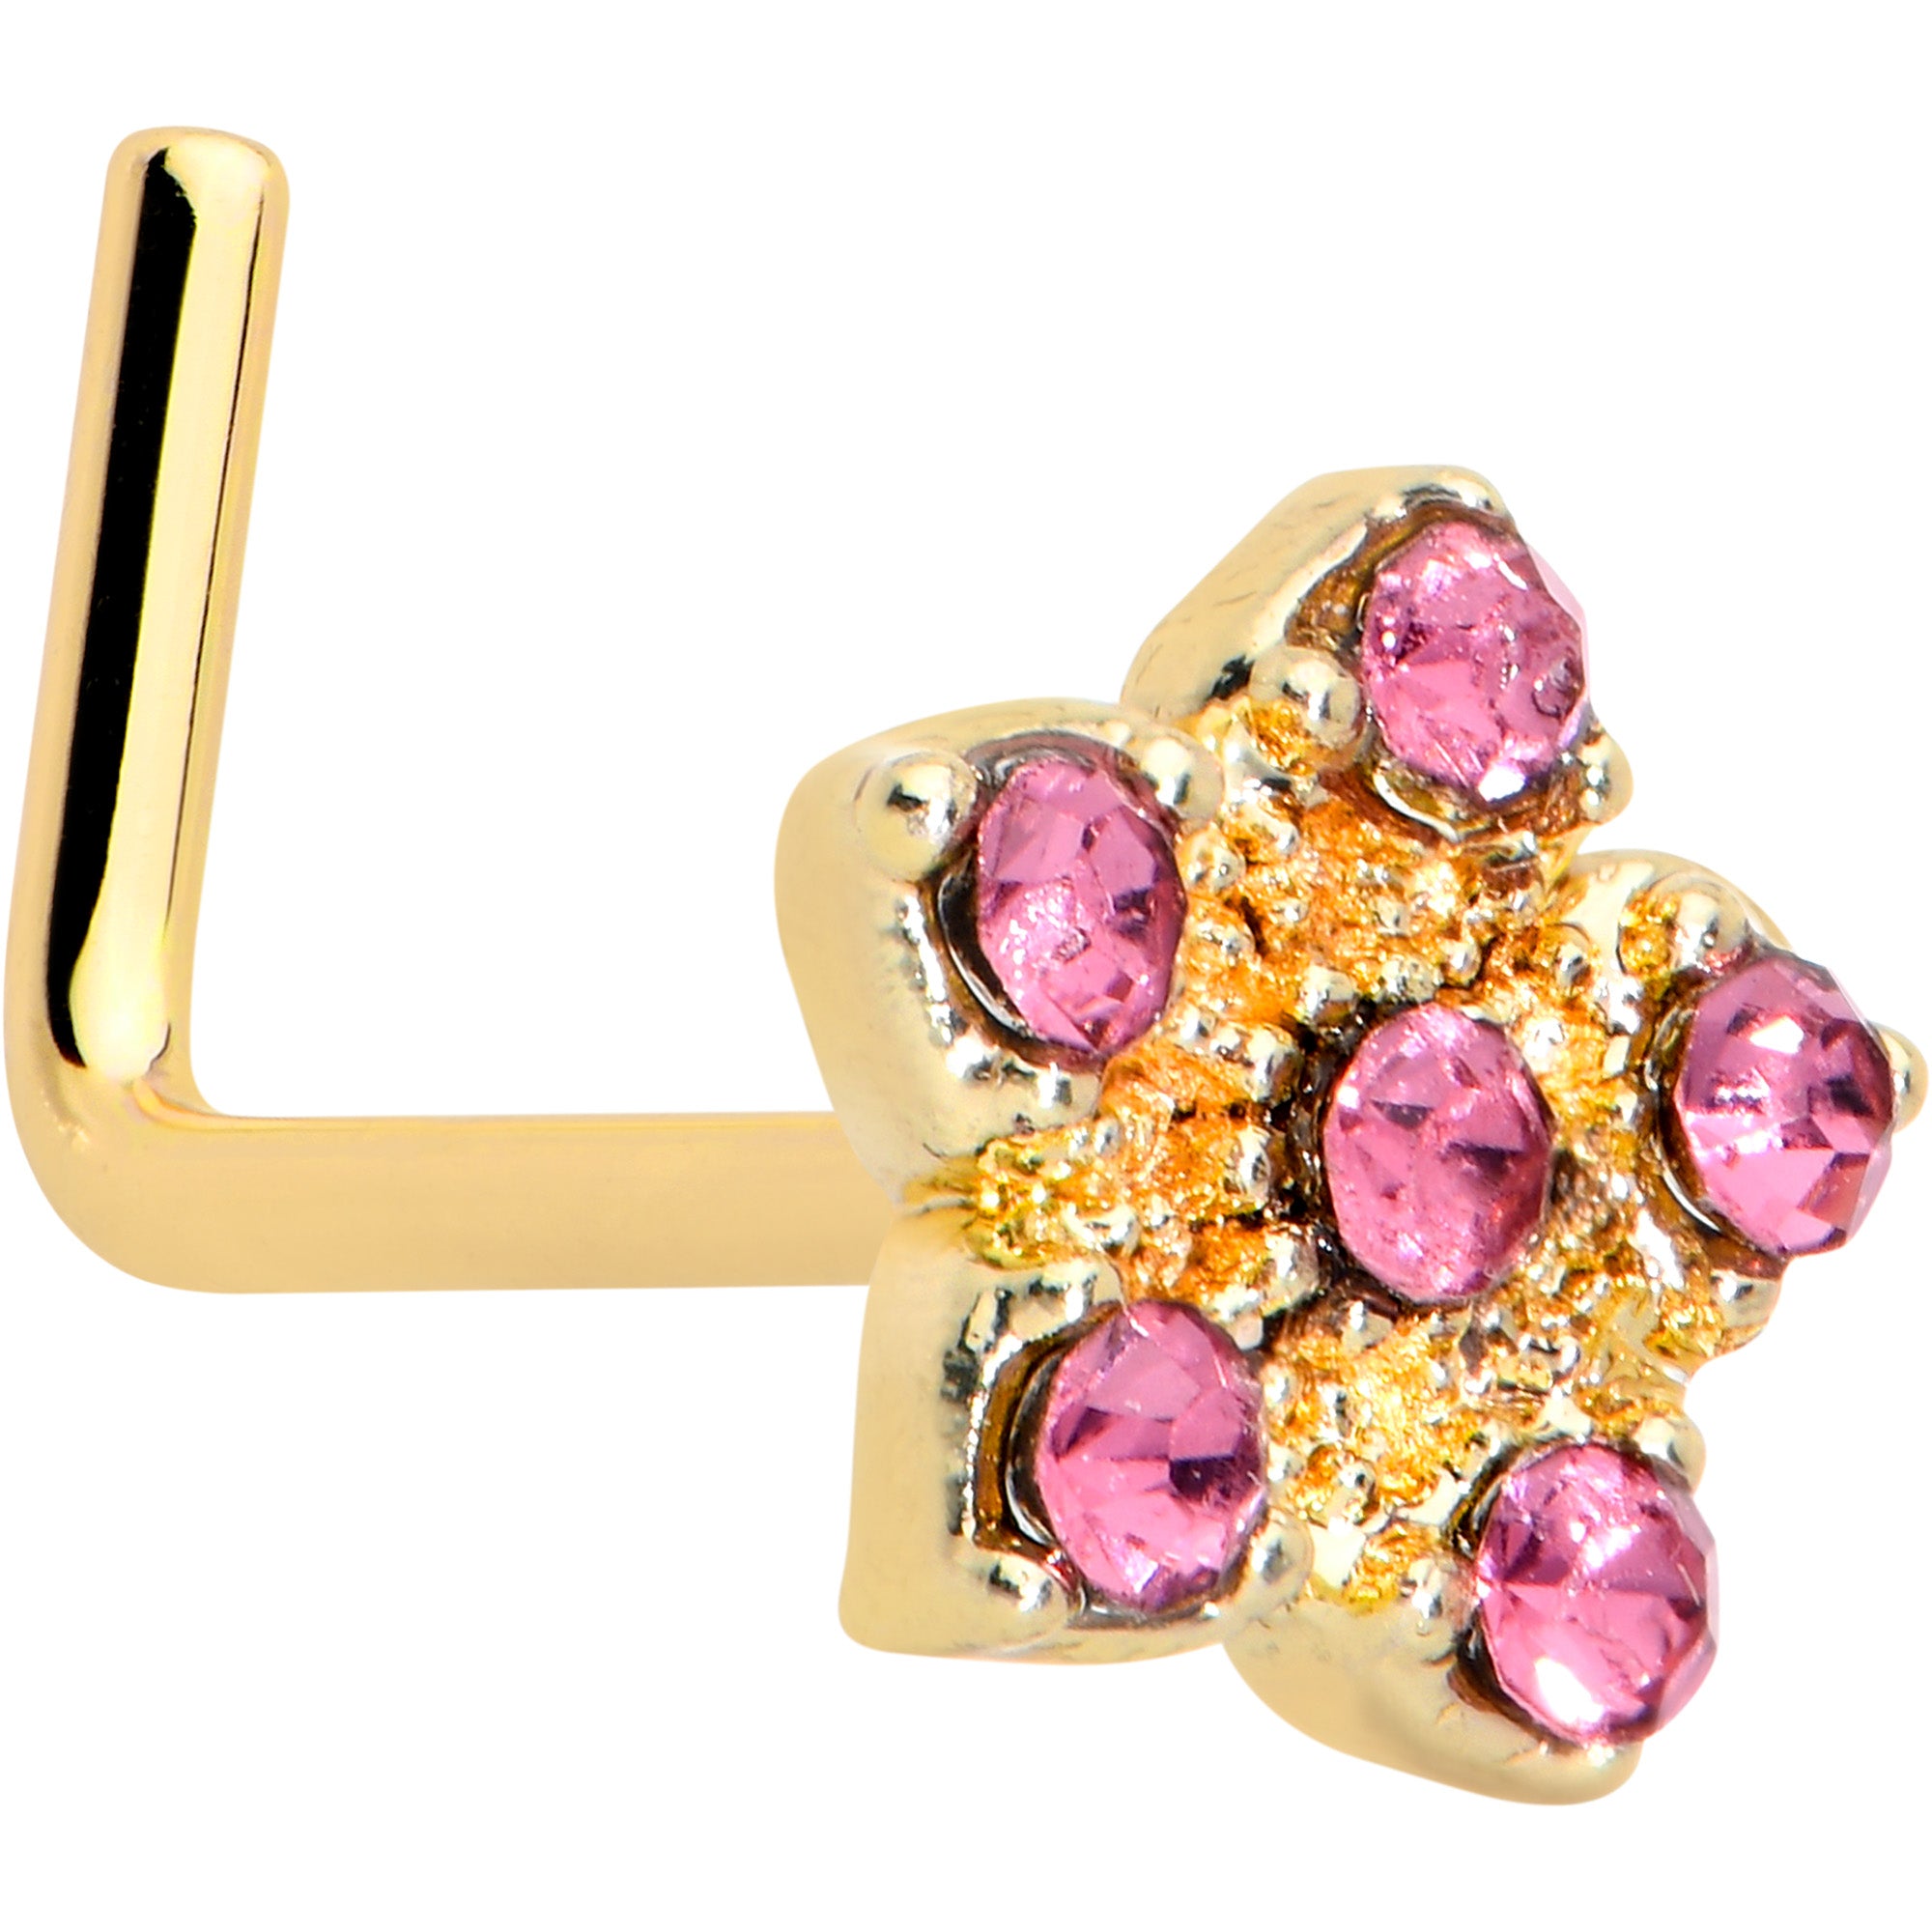 Image of 20 Gauge 7mm Pink Gem Gold Tone Texture Star Flower L Shape Nose Ring